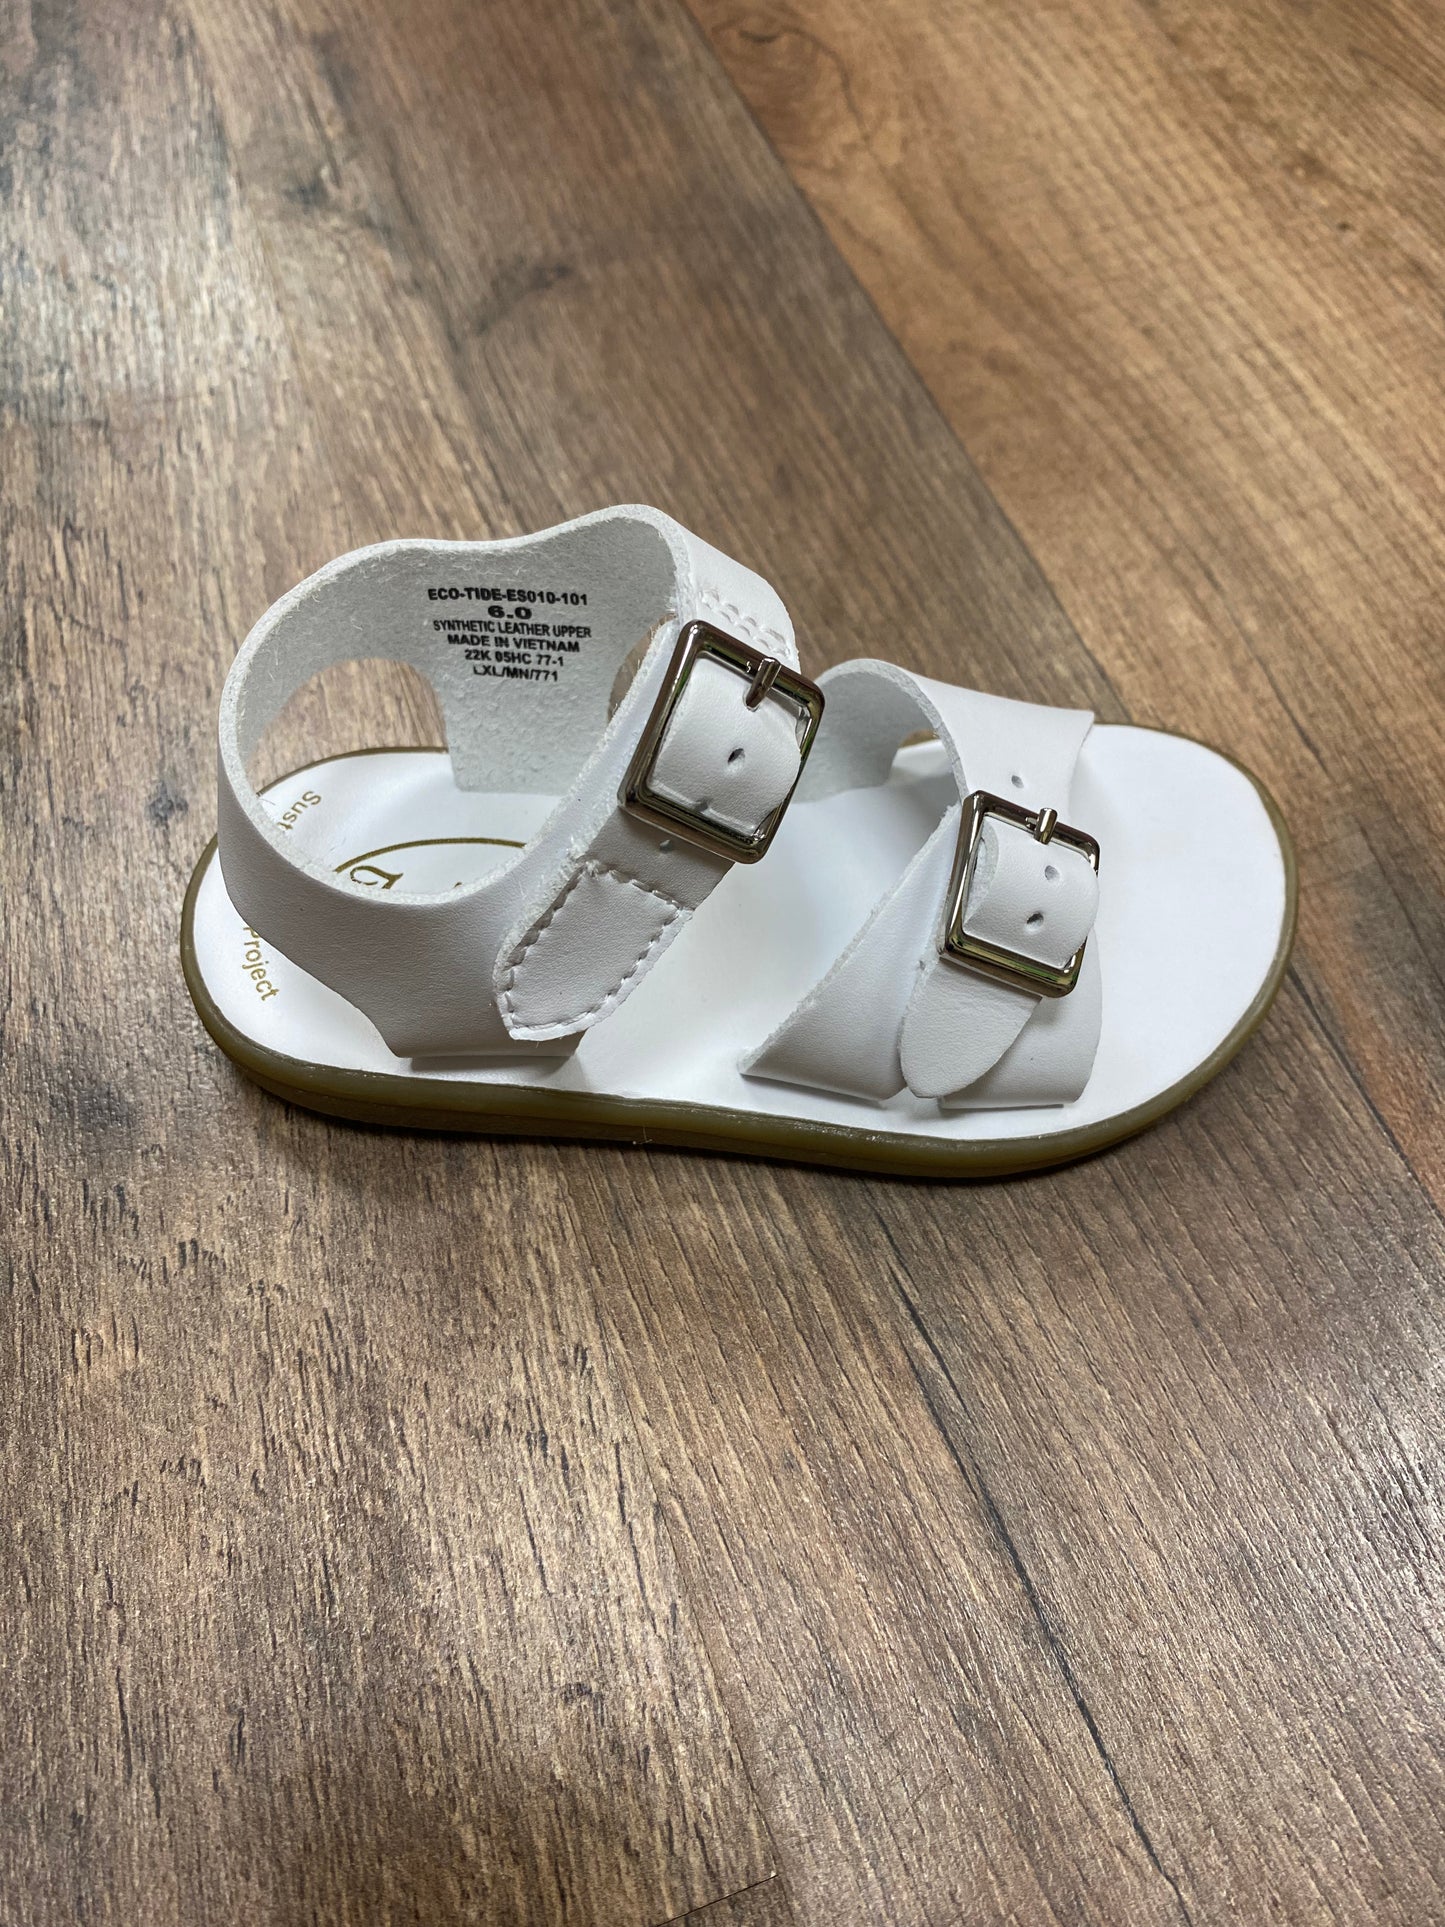 White sandal